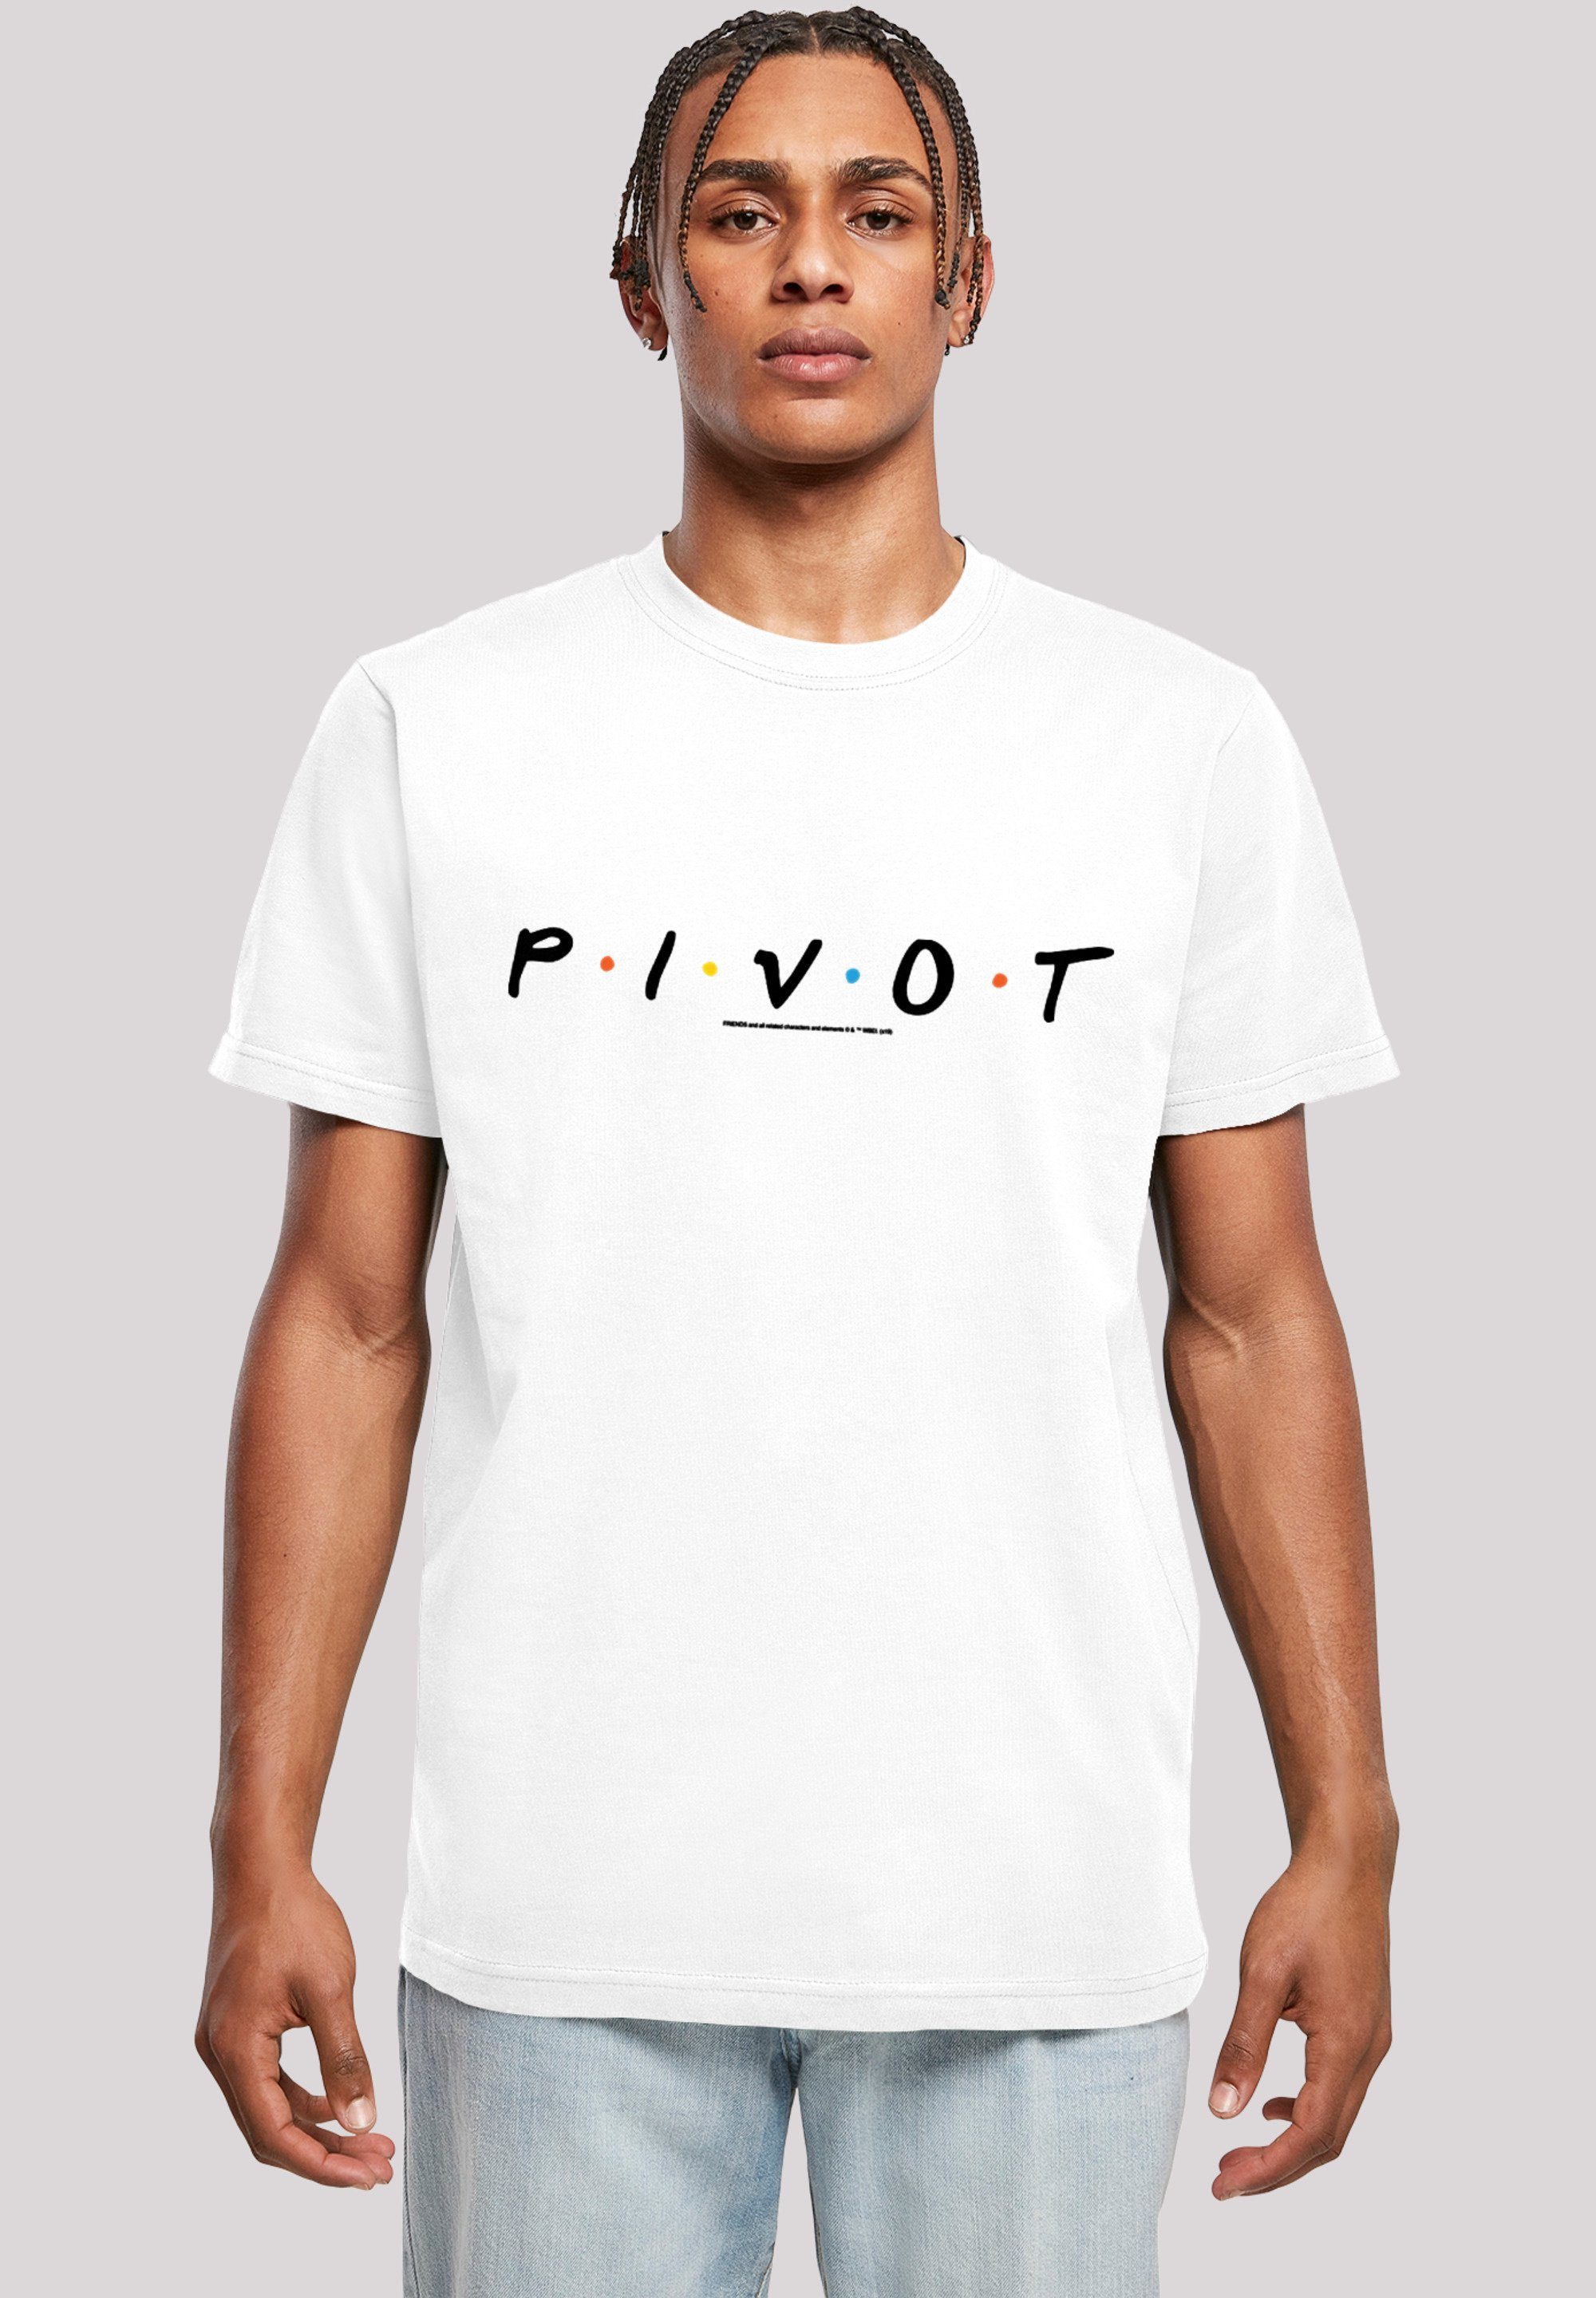 F4NT4STIC T-Shirt FRIENDS TV Serie Pivot Logo Herren,Premium Merch,Regular-Fit,Basic,Bedruckt